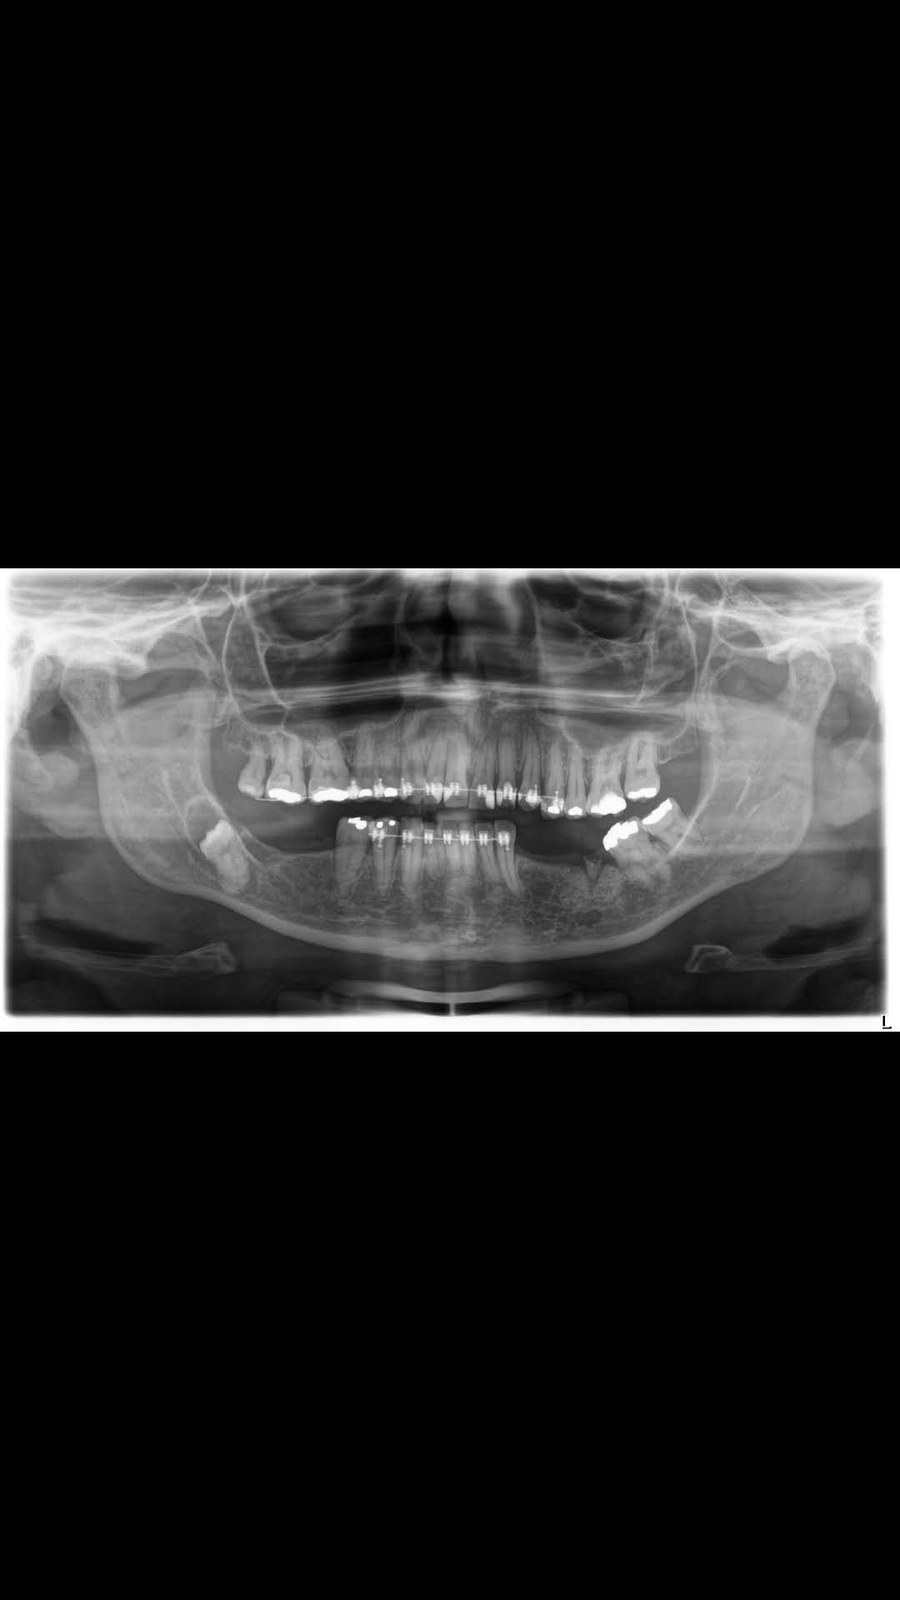 Preciso fazer uma cirurgia pra retirar um cisto no dente siso e implantar os que faltam